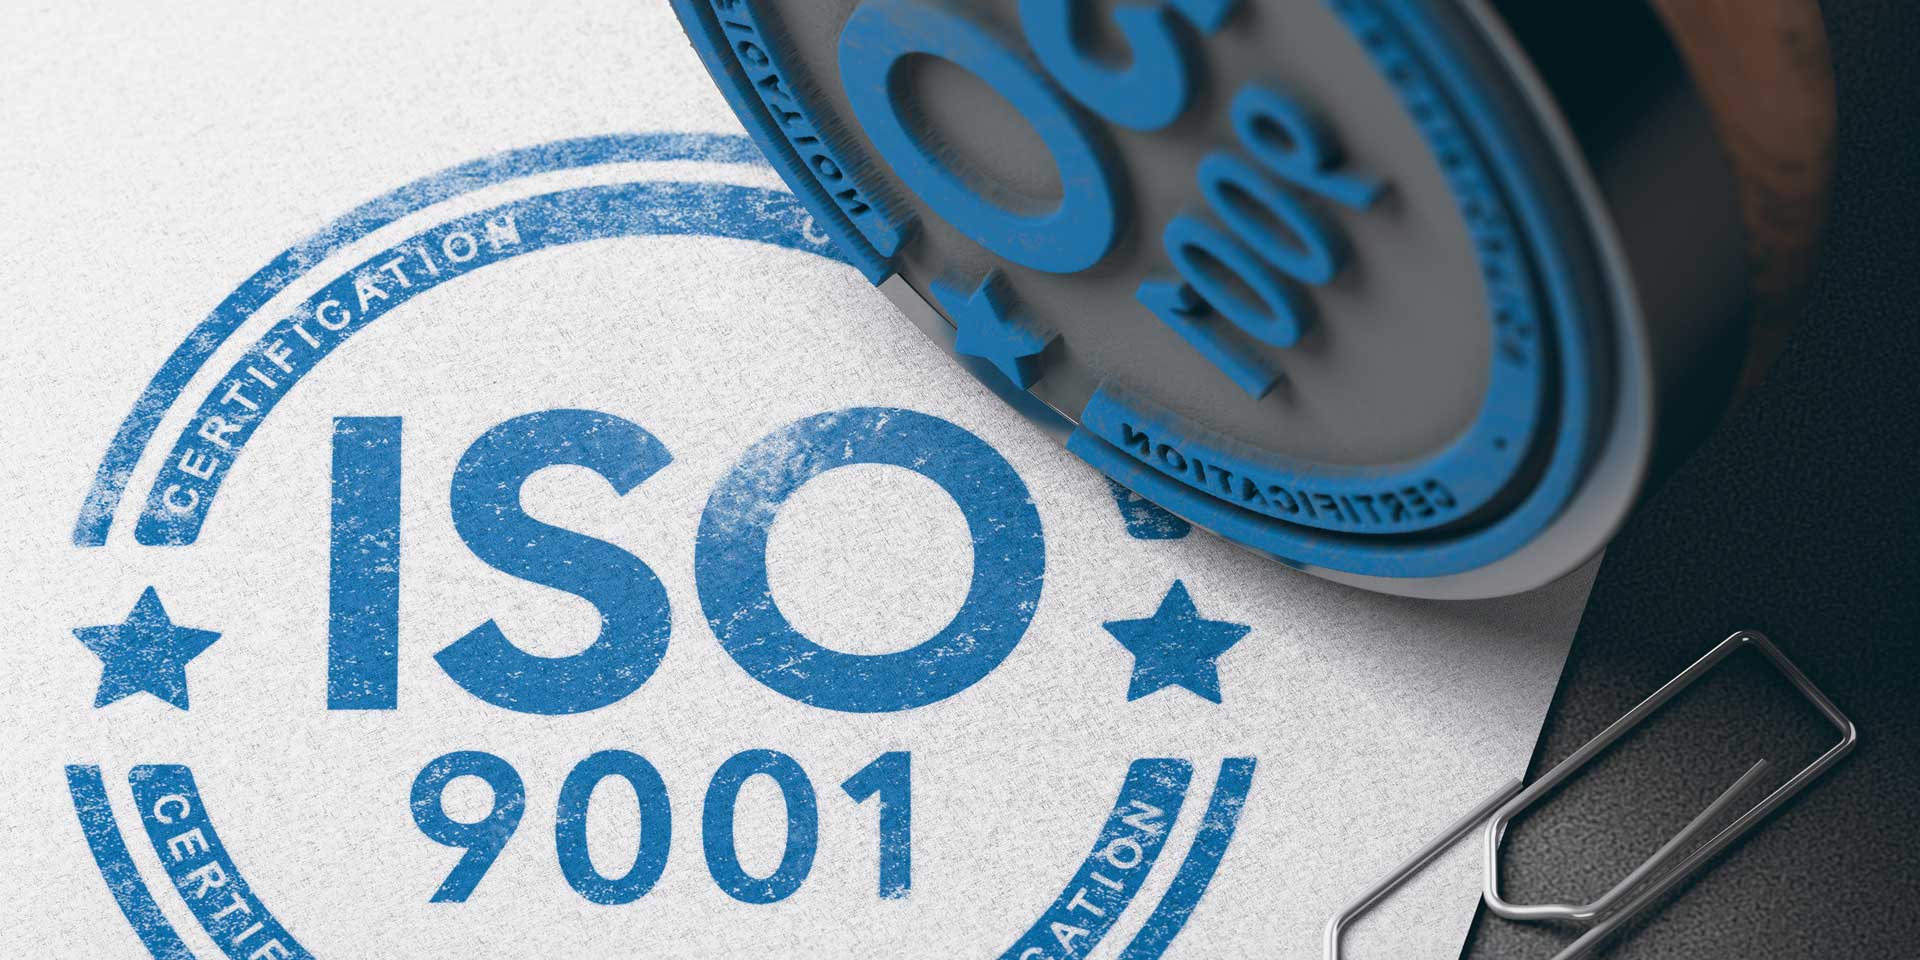 Coljuegos consigue importante certificación ISO 9001 